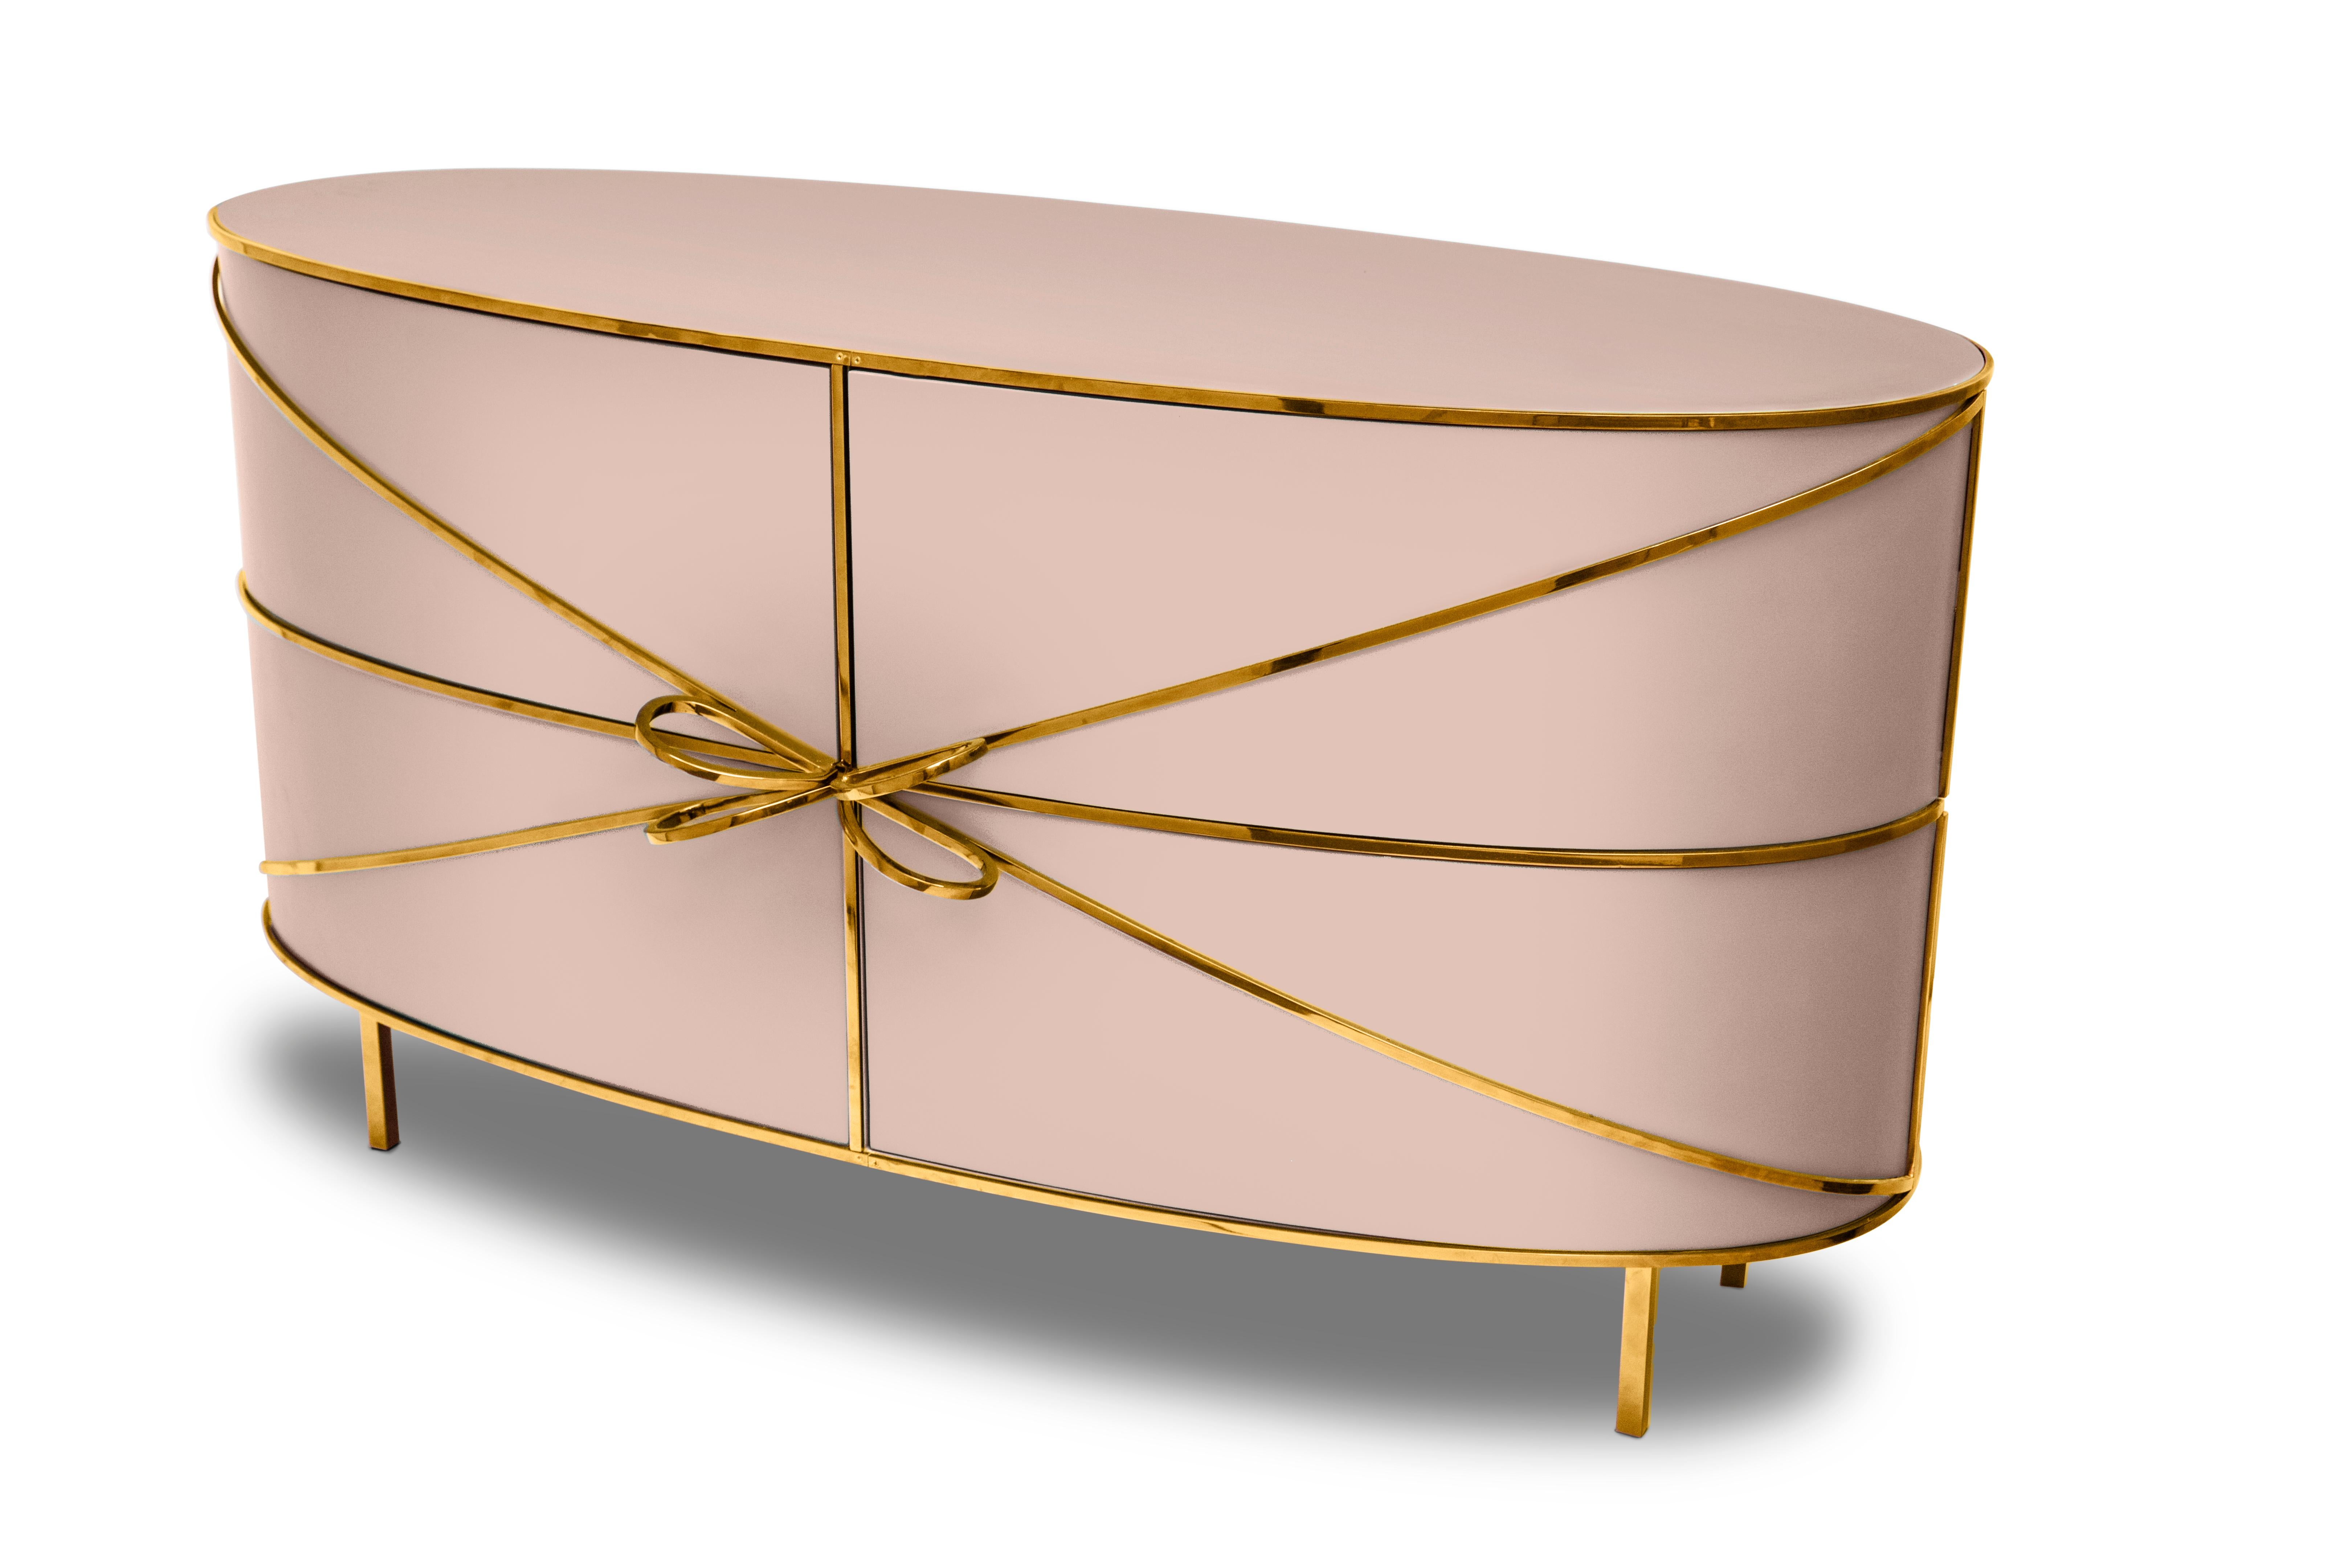 88 Secrets Pink Sideboard with Gold Trims von Nika Zupanc ist ein eleganter rosafarbener Schrank mit sinnlichen, femininen Linien und luxuriösen goldenen Metallverzierungen. Ein Blickfang in jedem Innenraum!

Nika Zupanc, eine auffallend renommierte